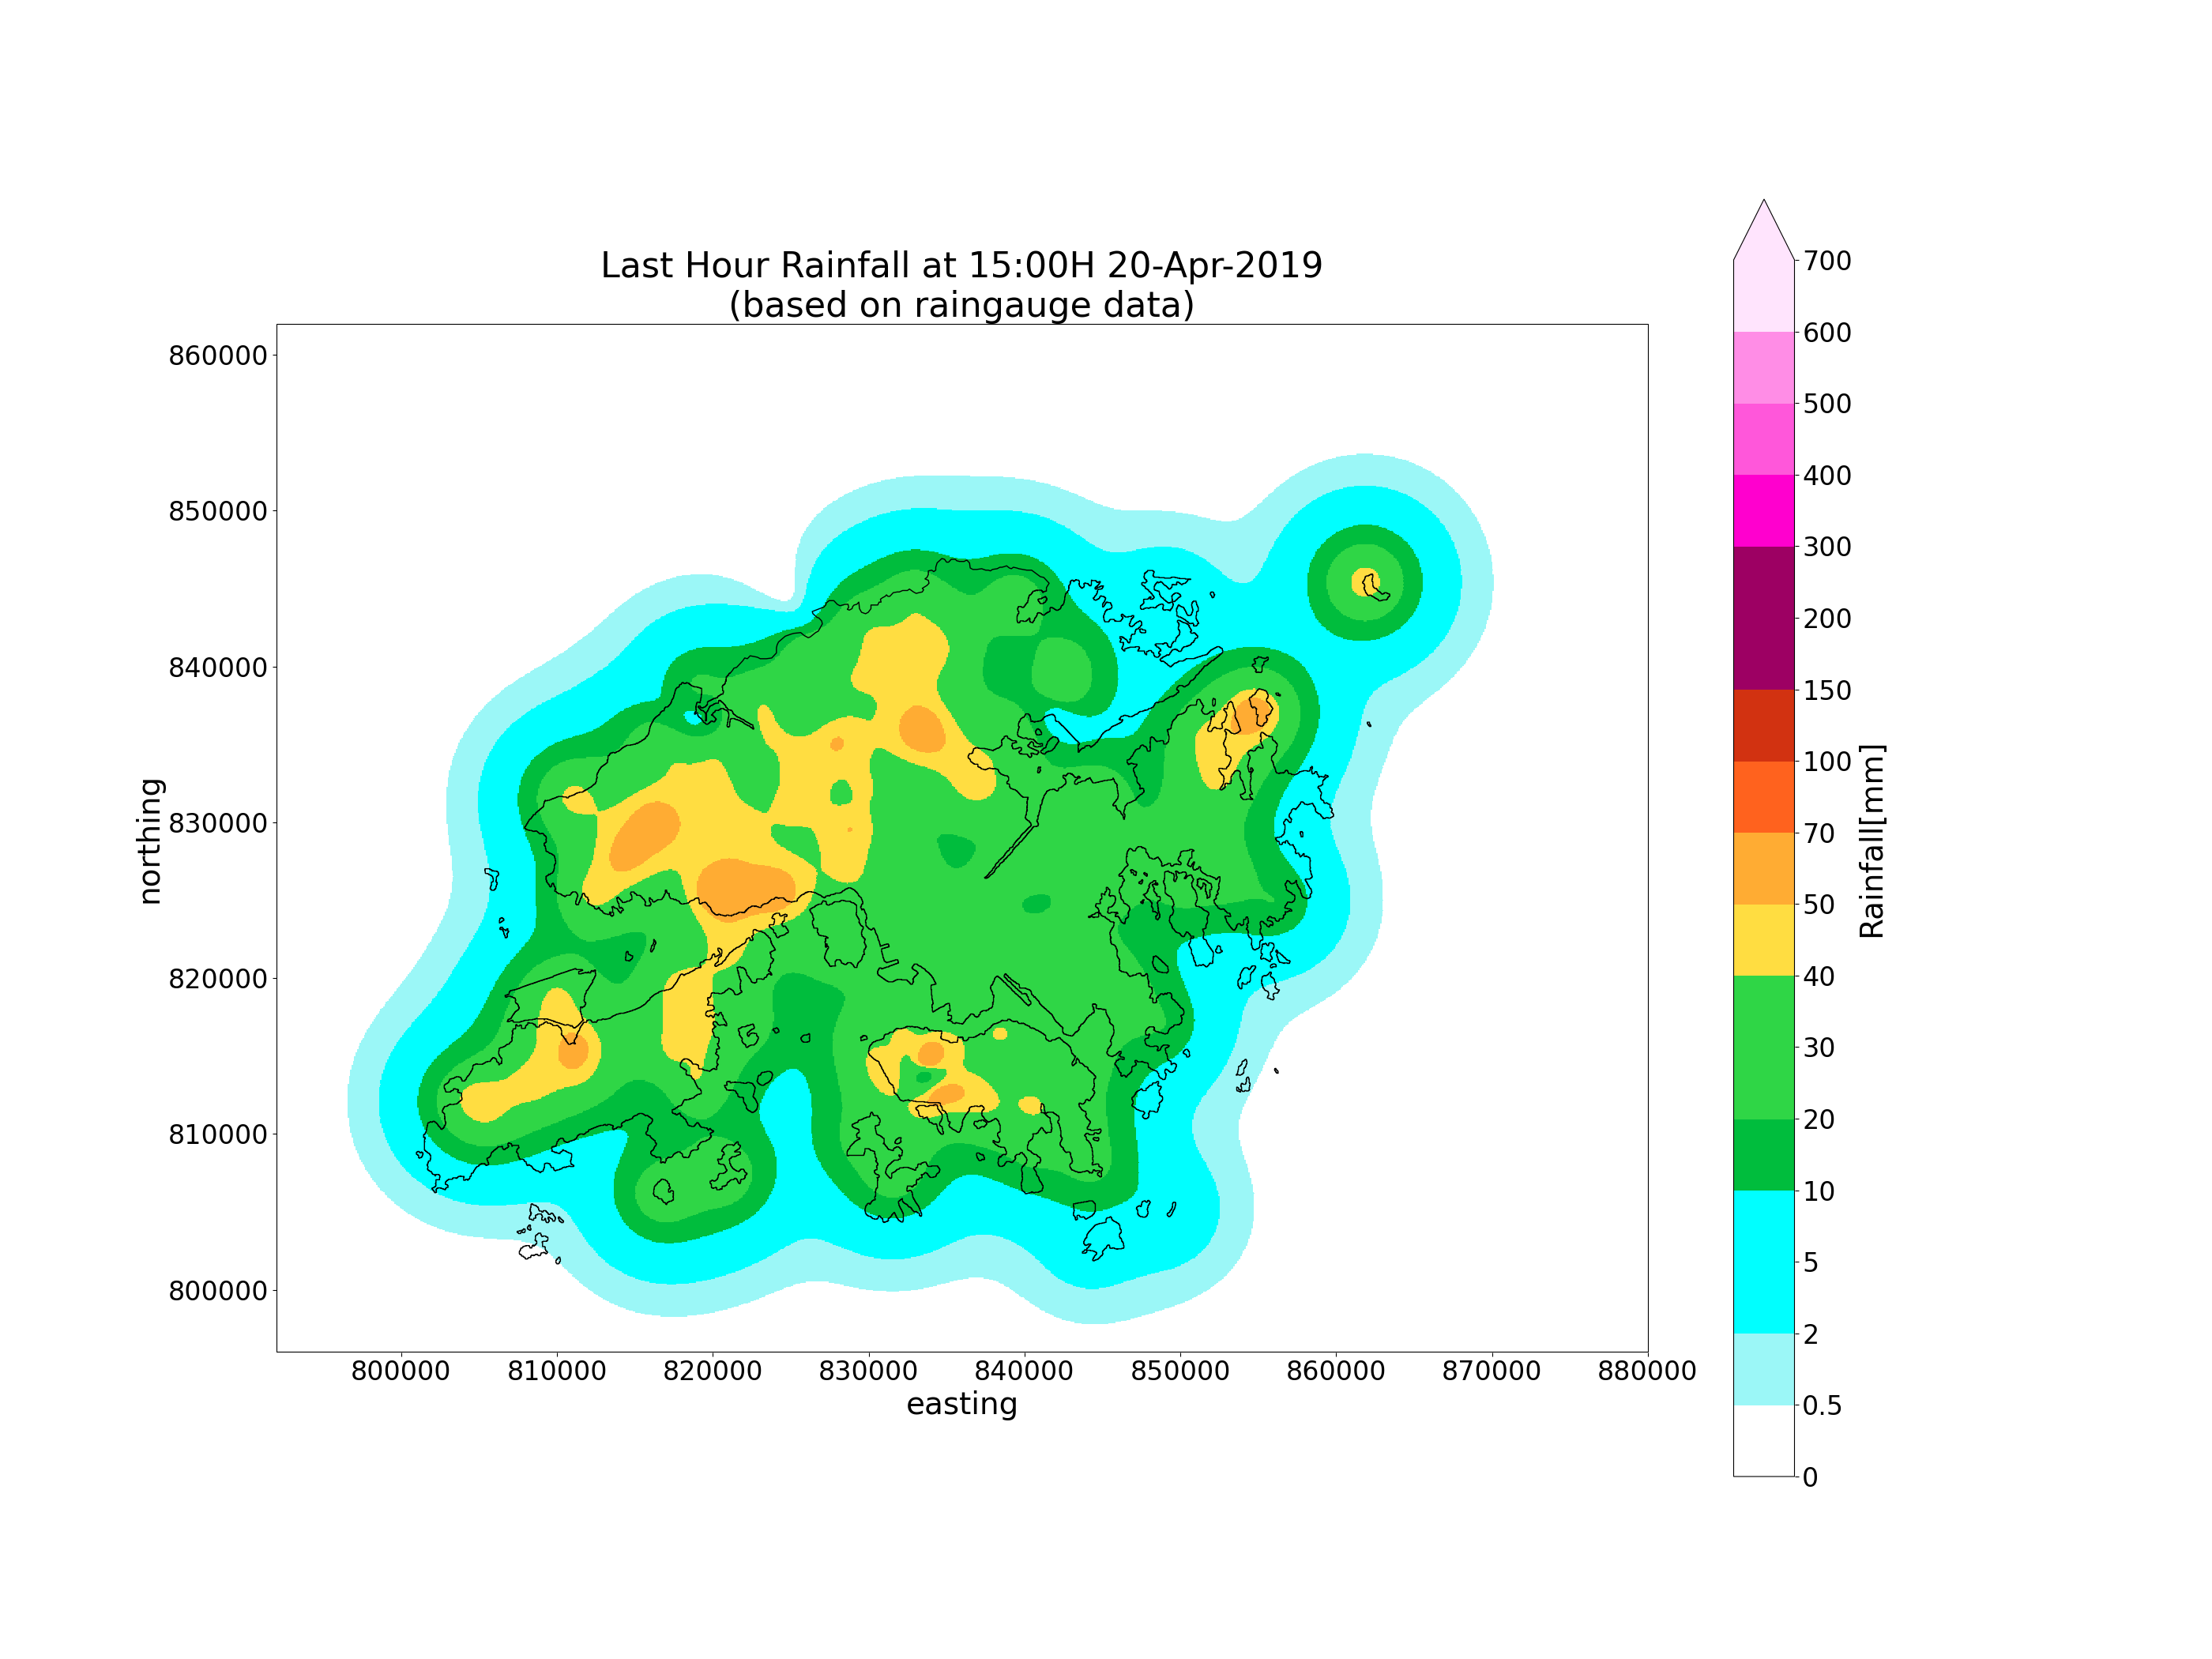 Last Hour Rainfall at 15:00H 20-Apr-2019 (based on raingauge data)